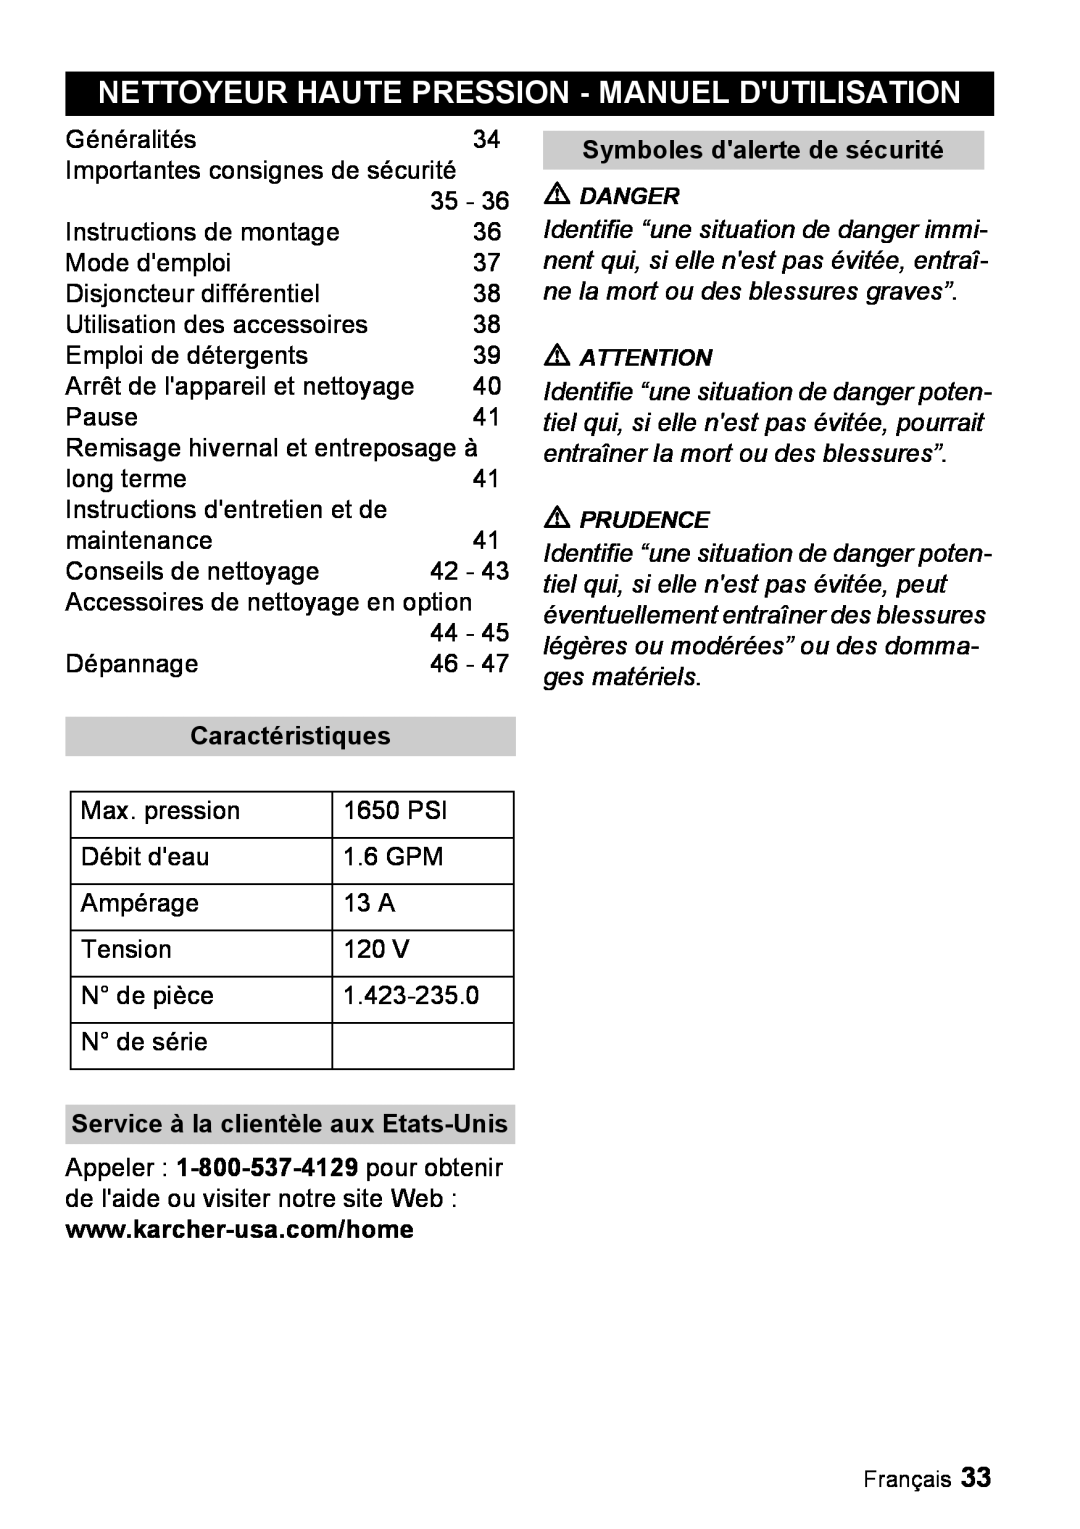 Karcher K 3.99M manual Nettoyeur Haute Pression - Manuel Dutilisation, Symboles dalerte de sécurité, ges matériels 